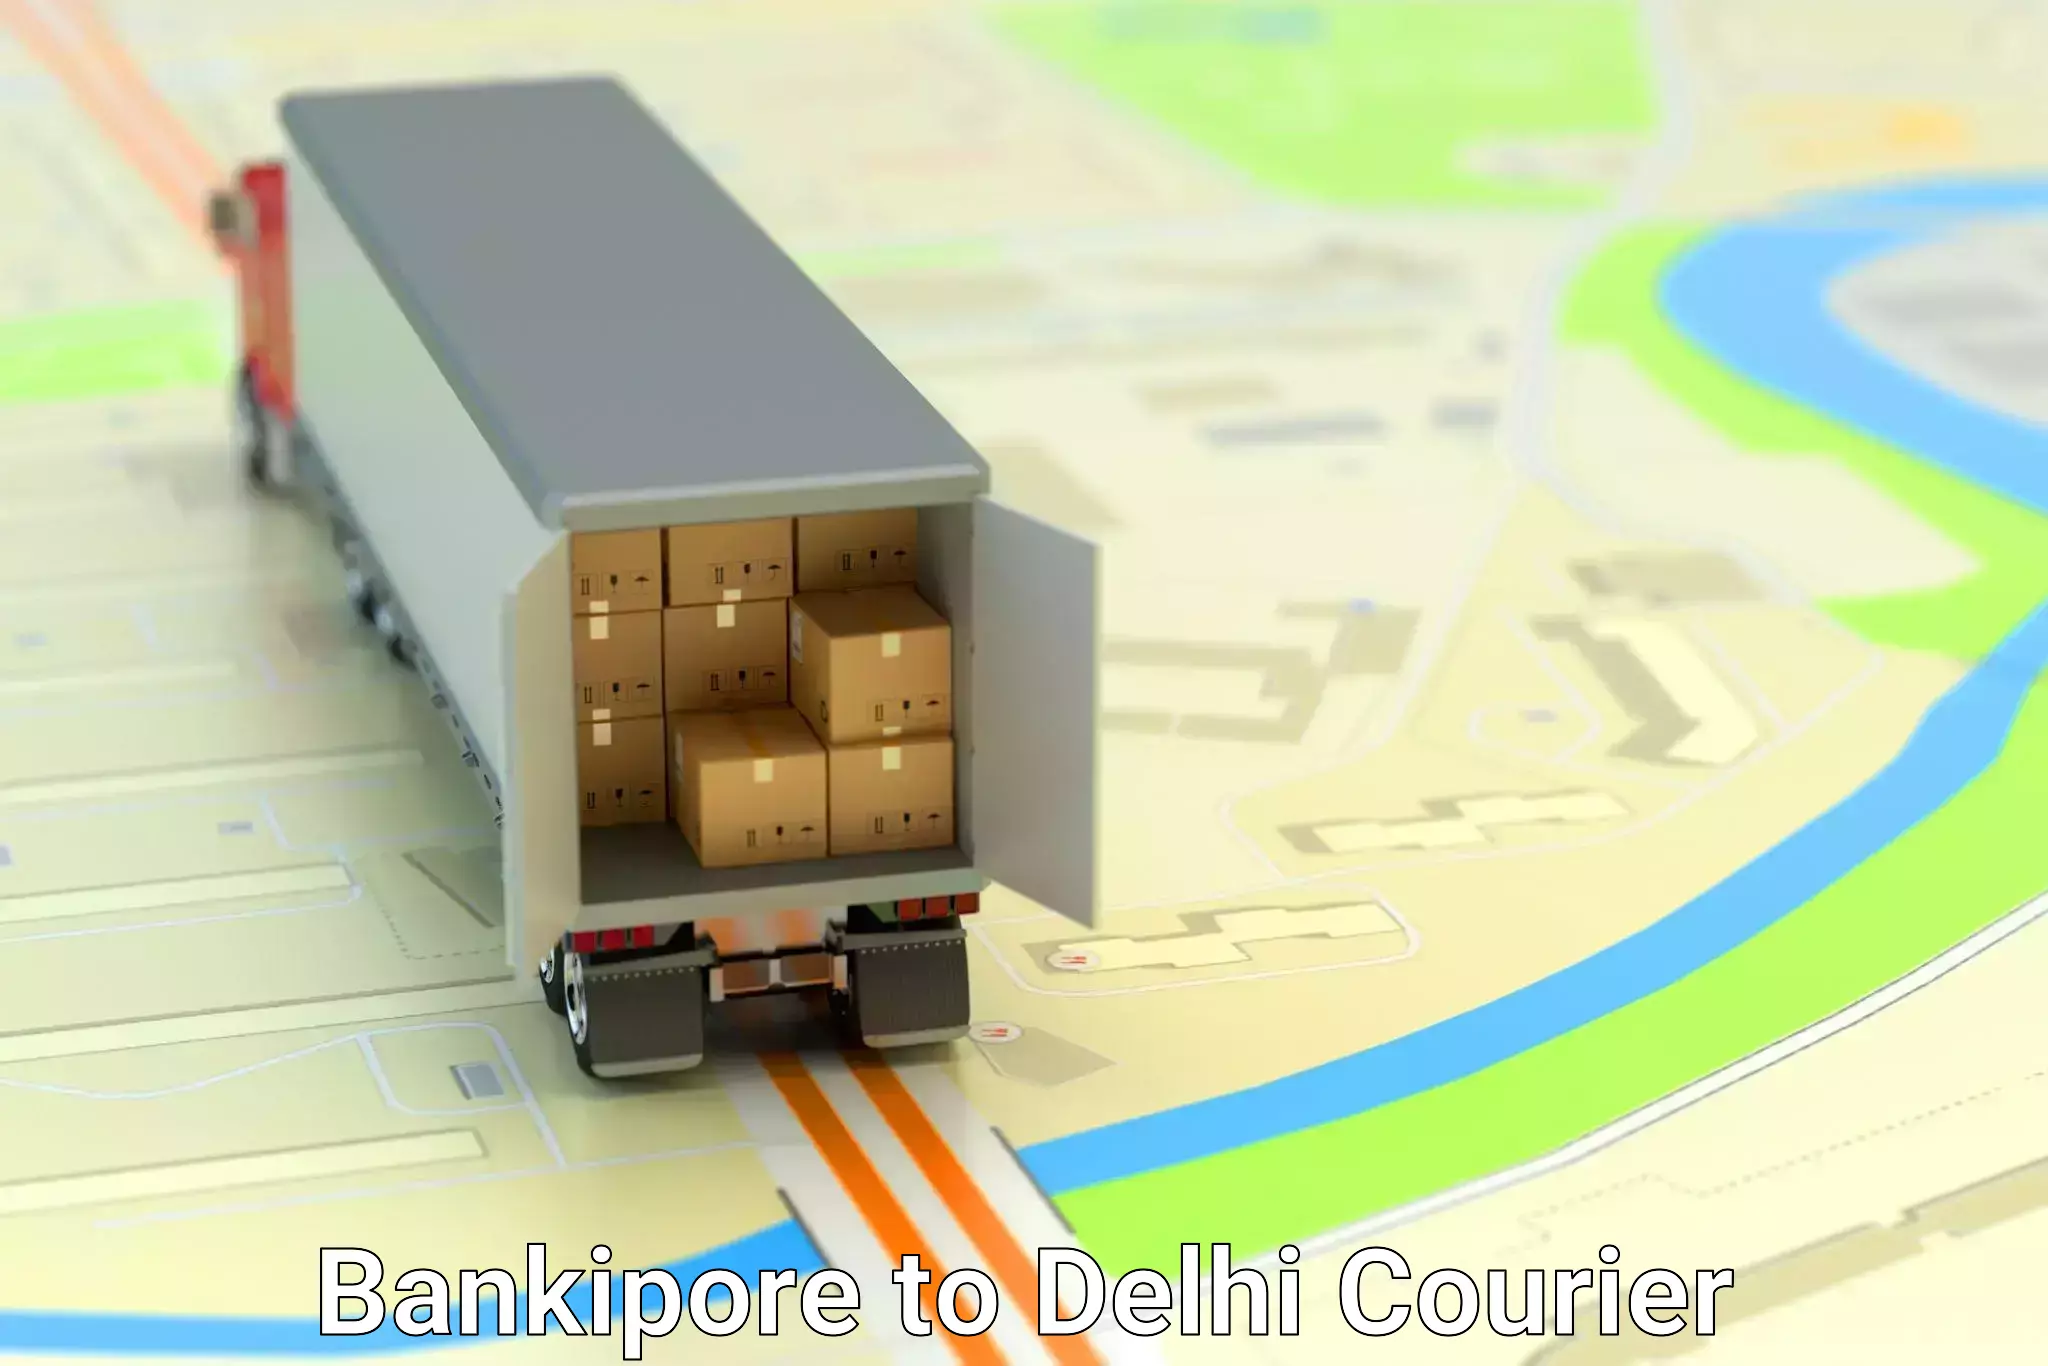 High-quality moving services Bankipore to Ashok Vihar